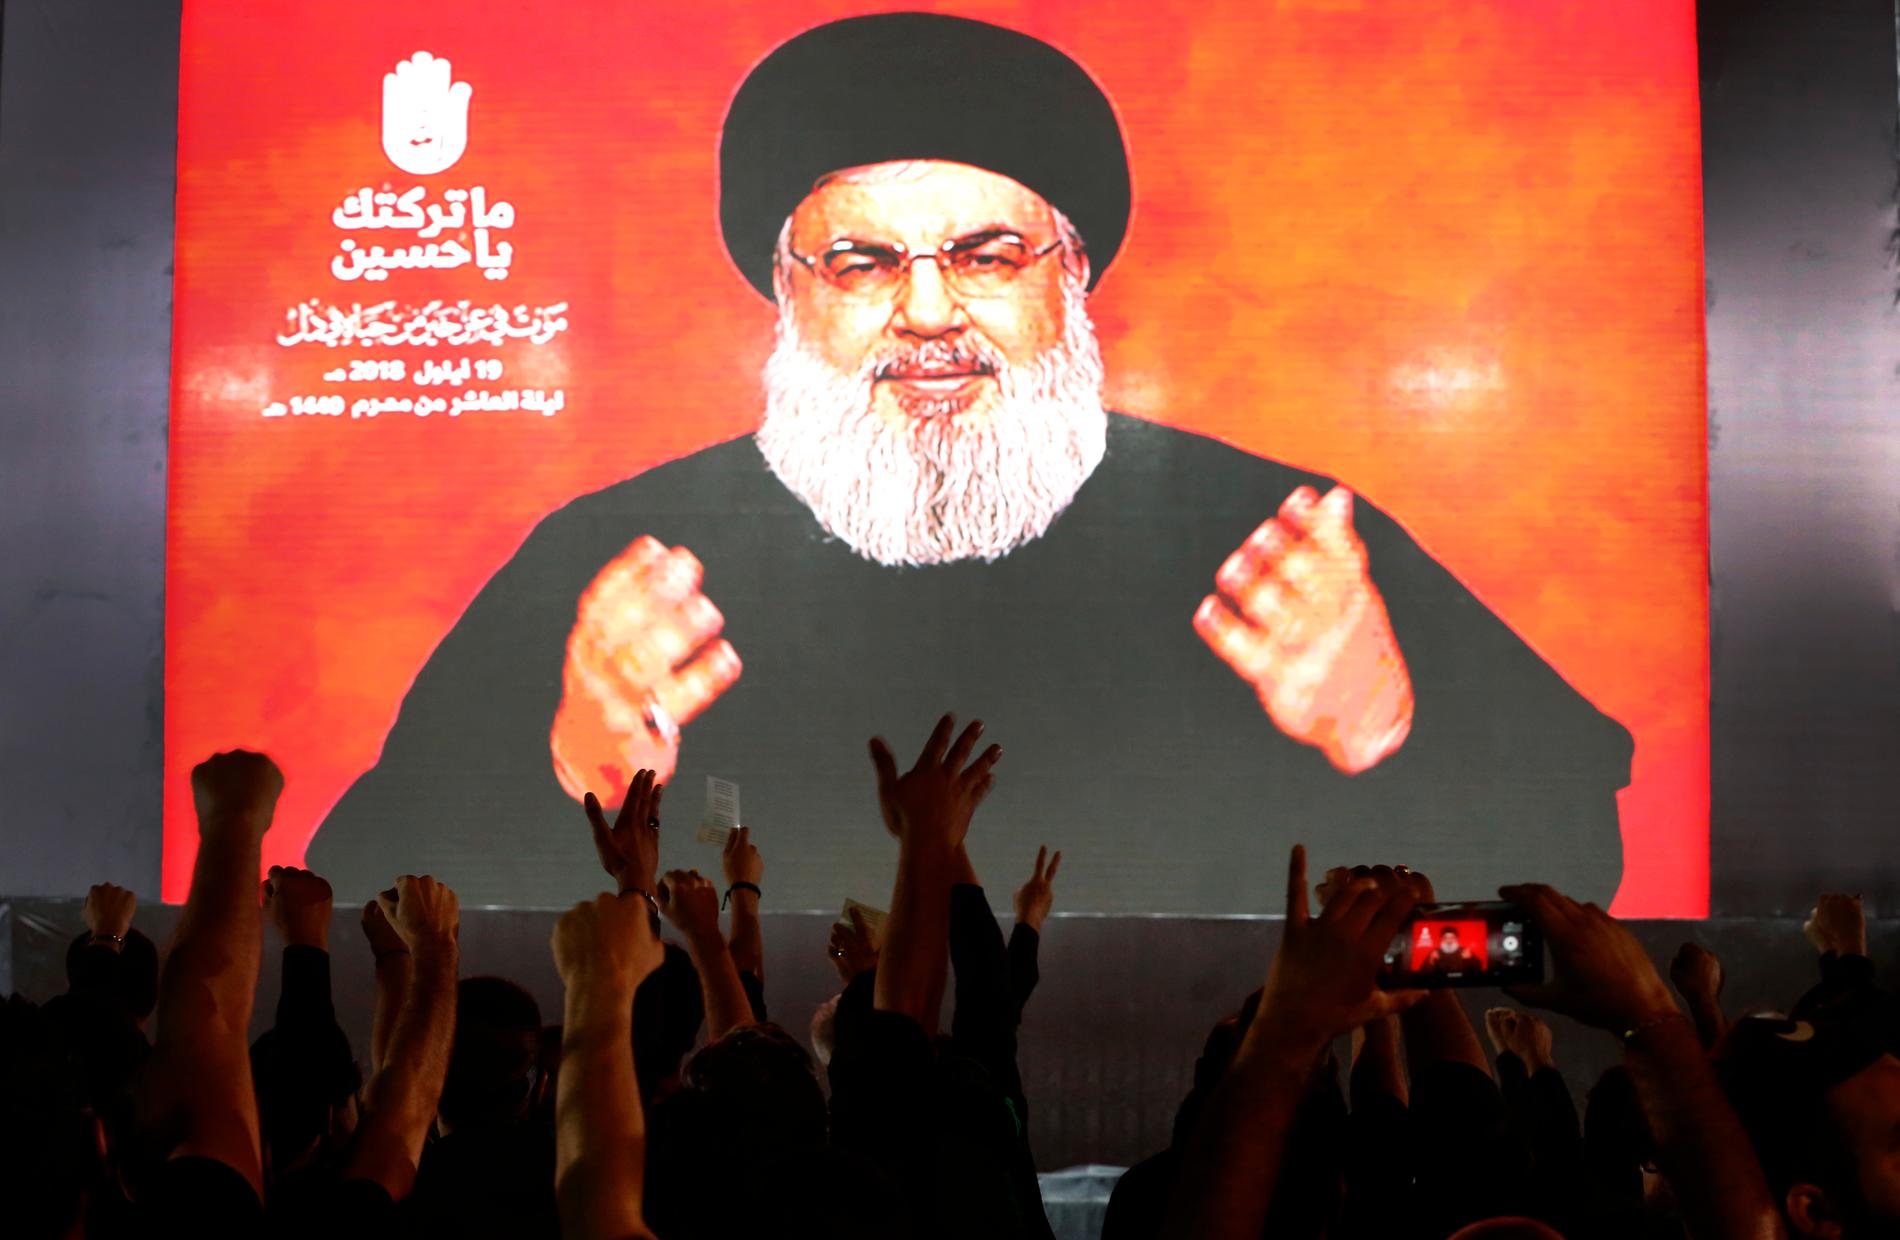 Hizbollahs ledare Hassan Nasrallah talar via videolänk, medan anhängare till honom lyfter händerna i luften under ett möte i Beirut på onsdagen.